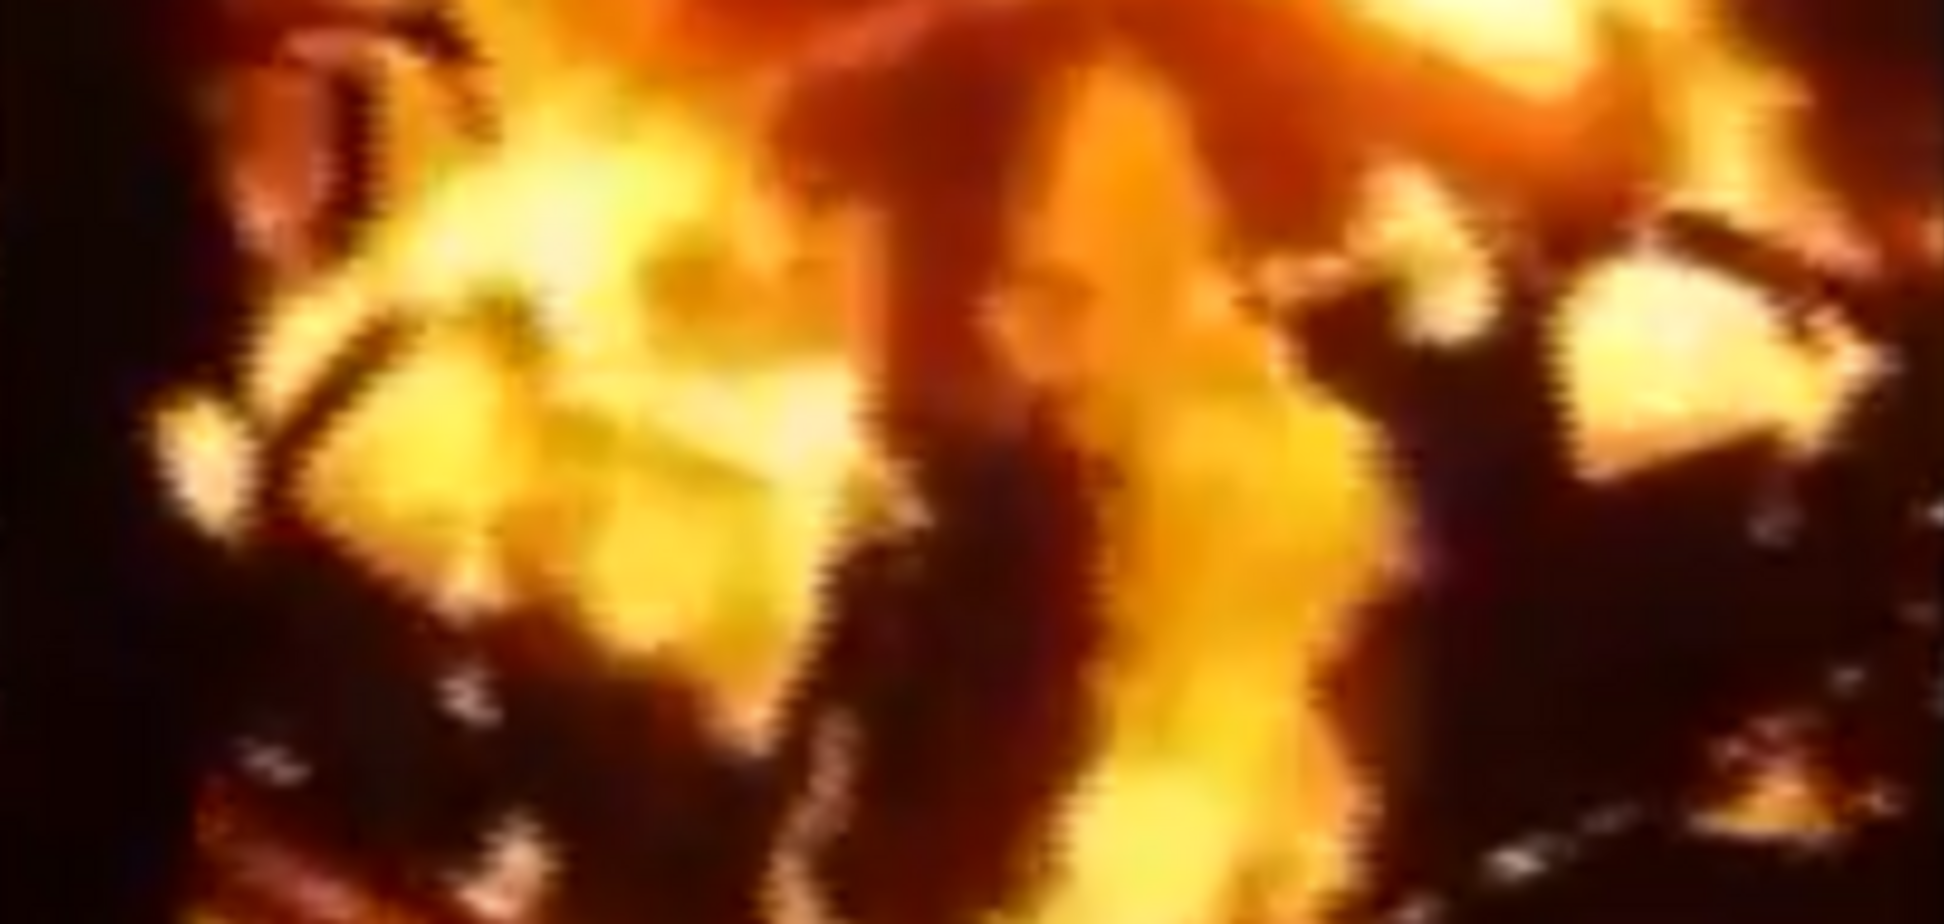 ЗМІ: в Ужгороді спалили дотла машину прокурора, опубліковано відео